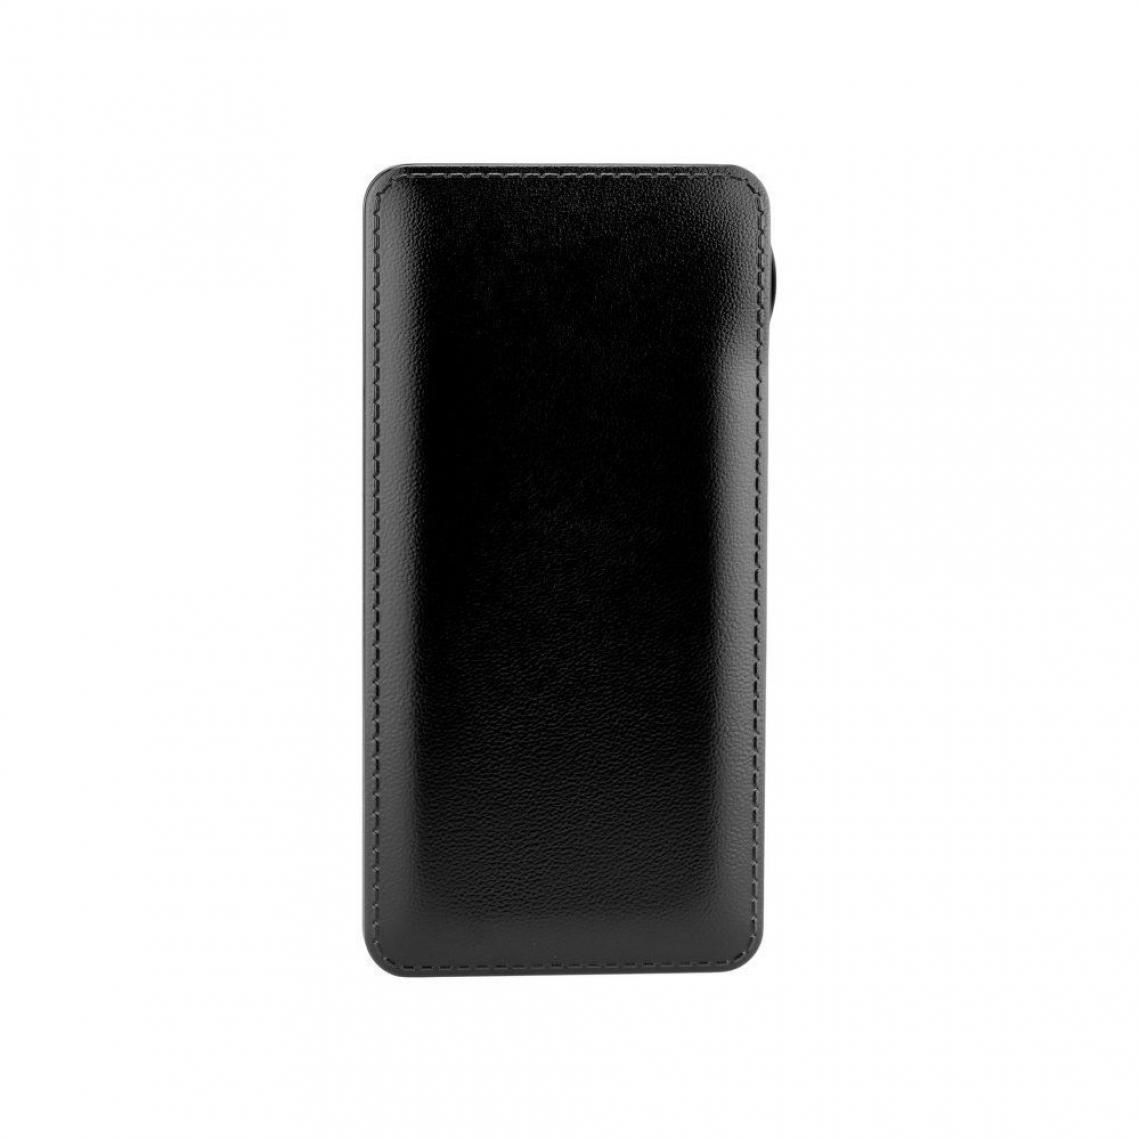 Ozzzo - Chargeur batterie externe 20000 mAh powerbank ozzzo noir pour Asus ROG Phone 2 - Autres accessoires smartphone